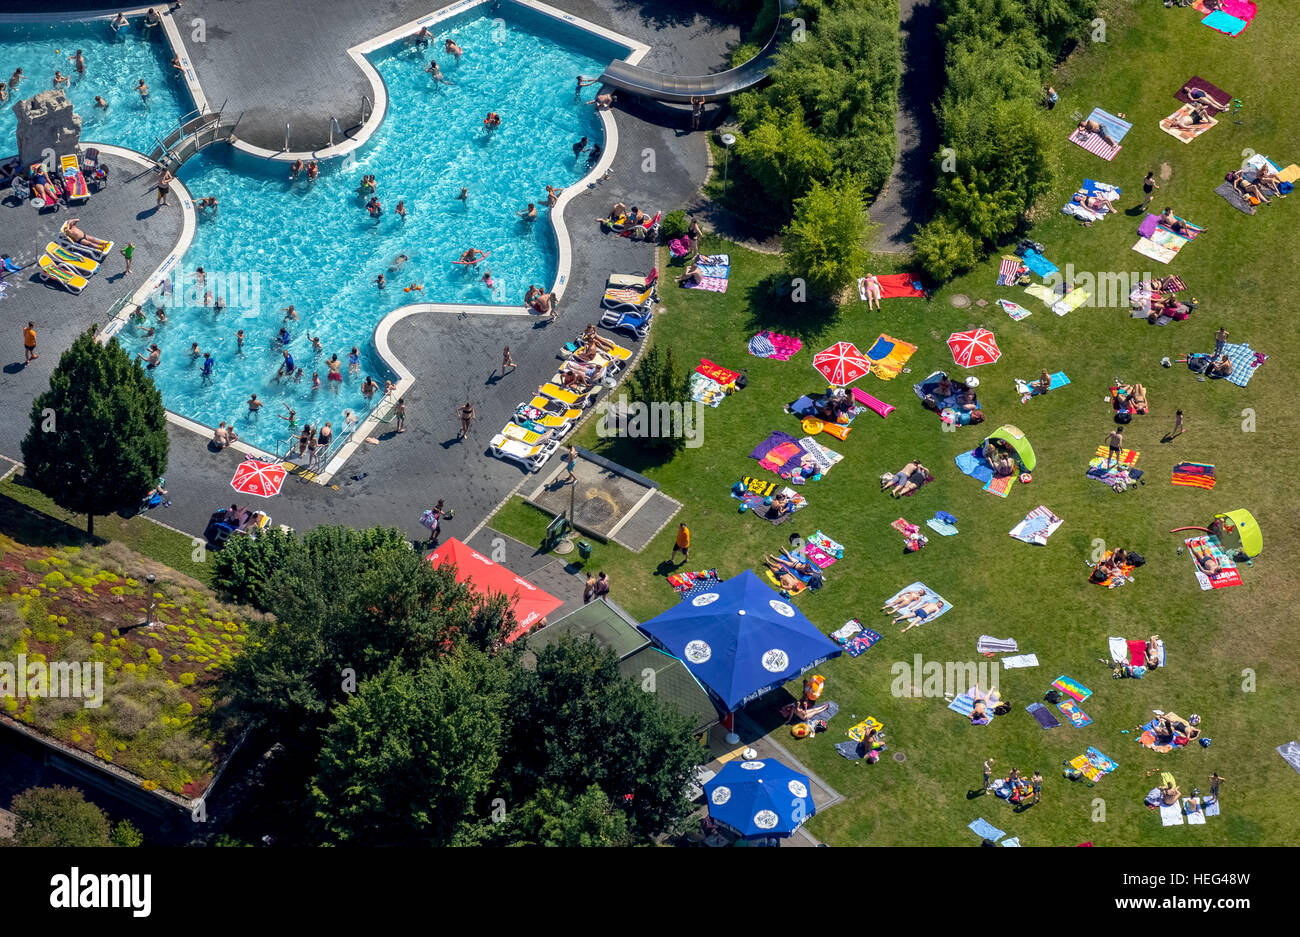 Vista aérea, los bañistas en el Atlantis piscina descubierta, solarium de césped, Dorsten, districto de Ruhr, Renania del Norte-Westfalia, Alemania Foto de stock